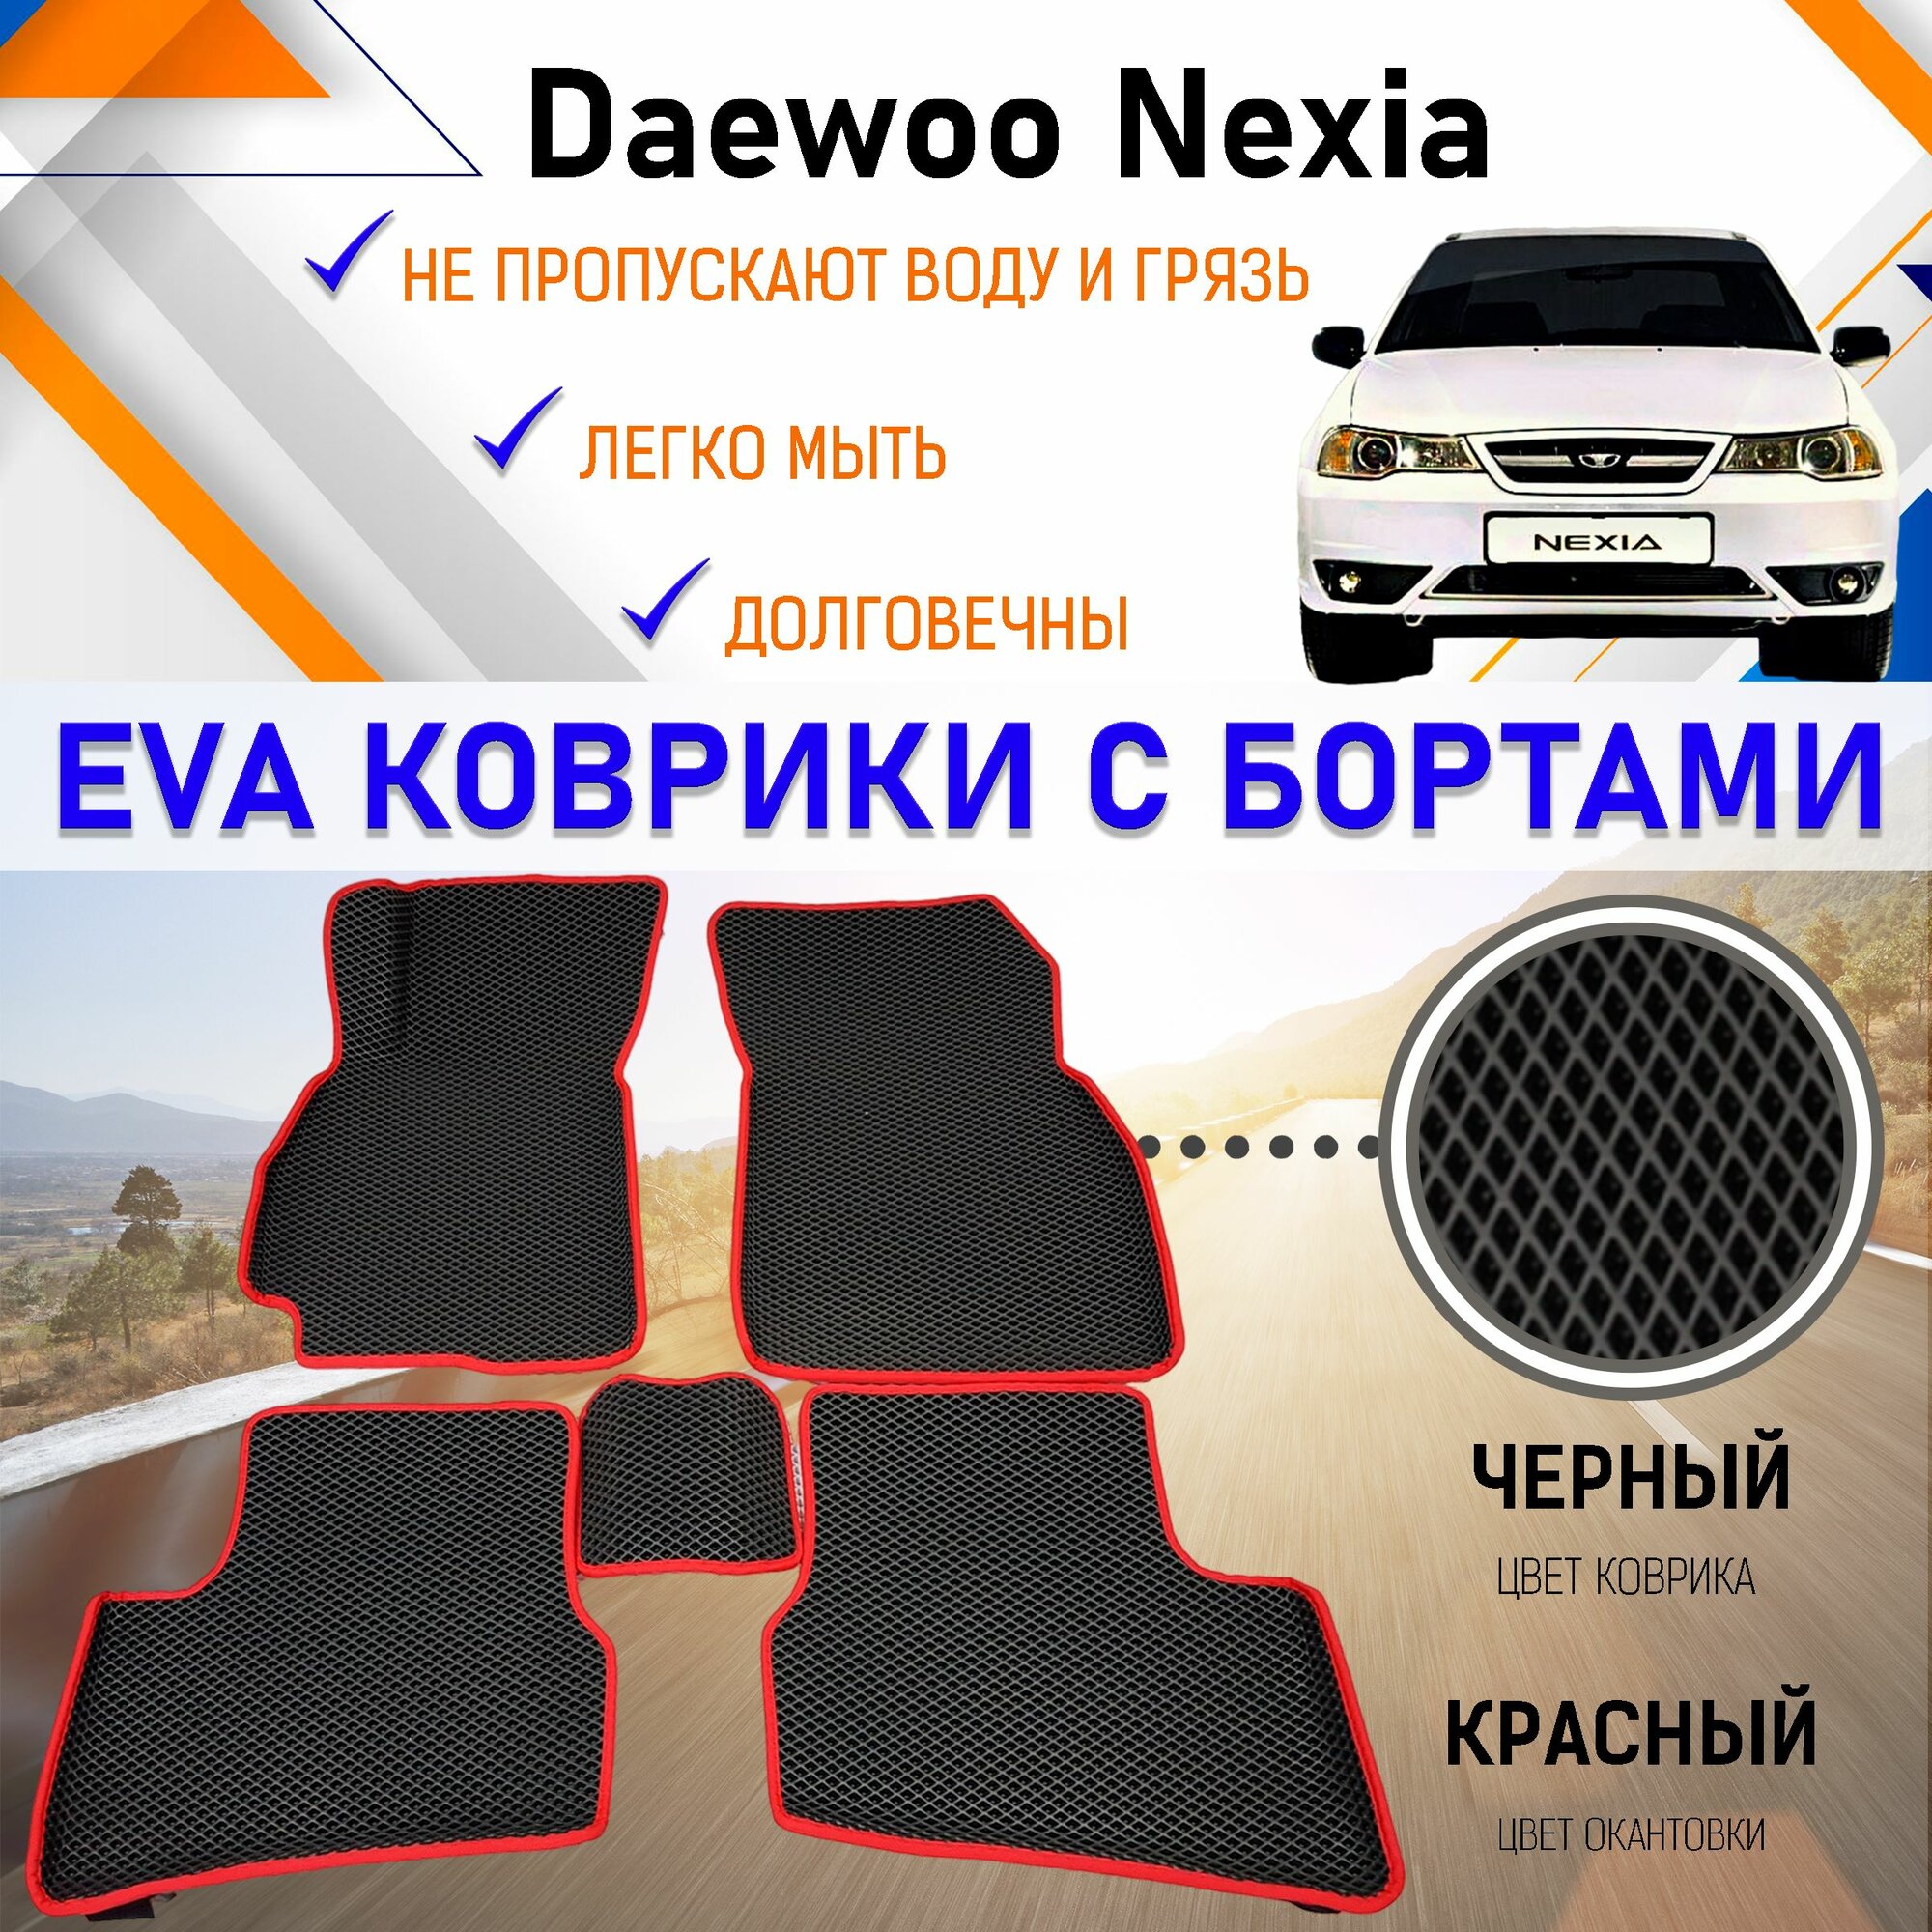 Автомобильные коврики ЕVA, EVO, ЭВО, ЭВА, ЕВА, ЕВО с бортами в салон машины Daewoo Nexia Дэу Нексия, резиновый настил для защиты салона авто от грязи и воды